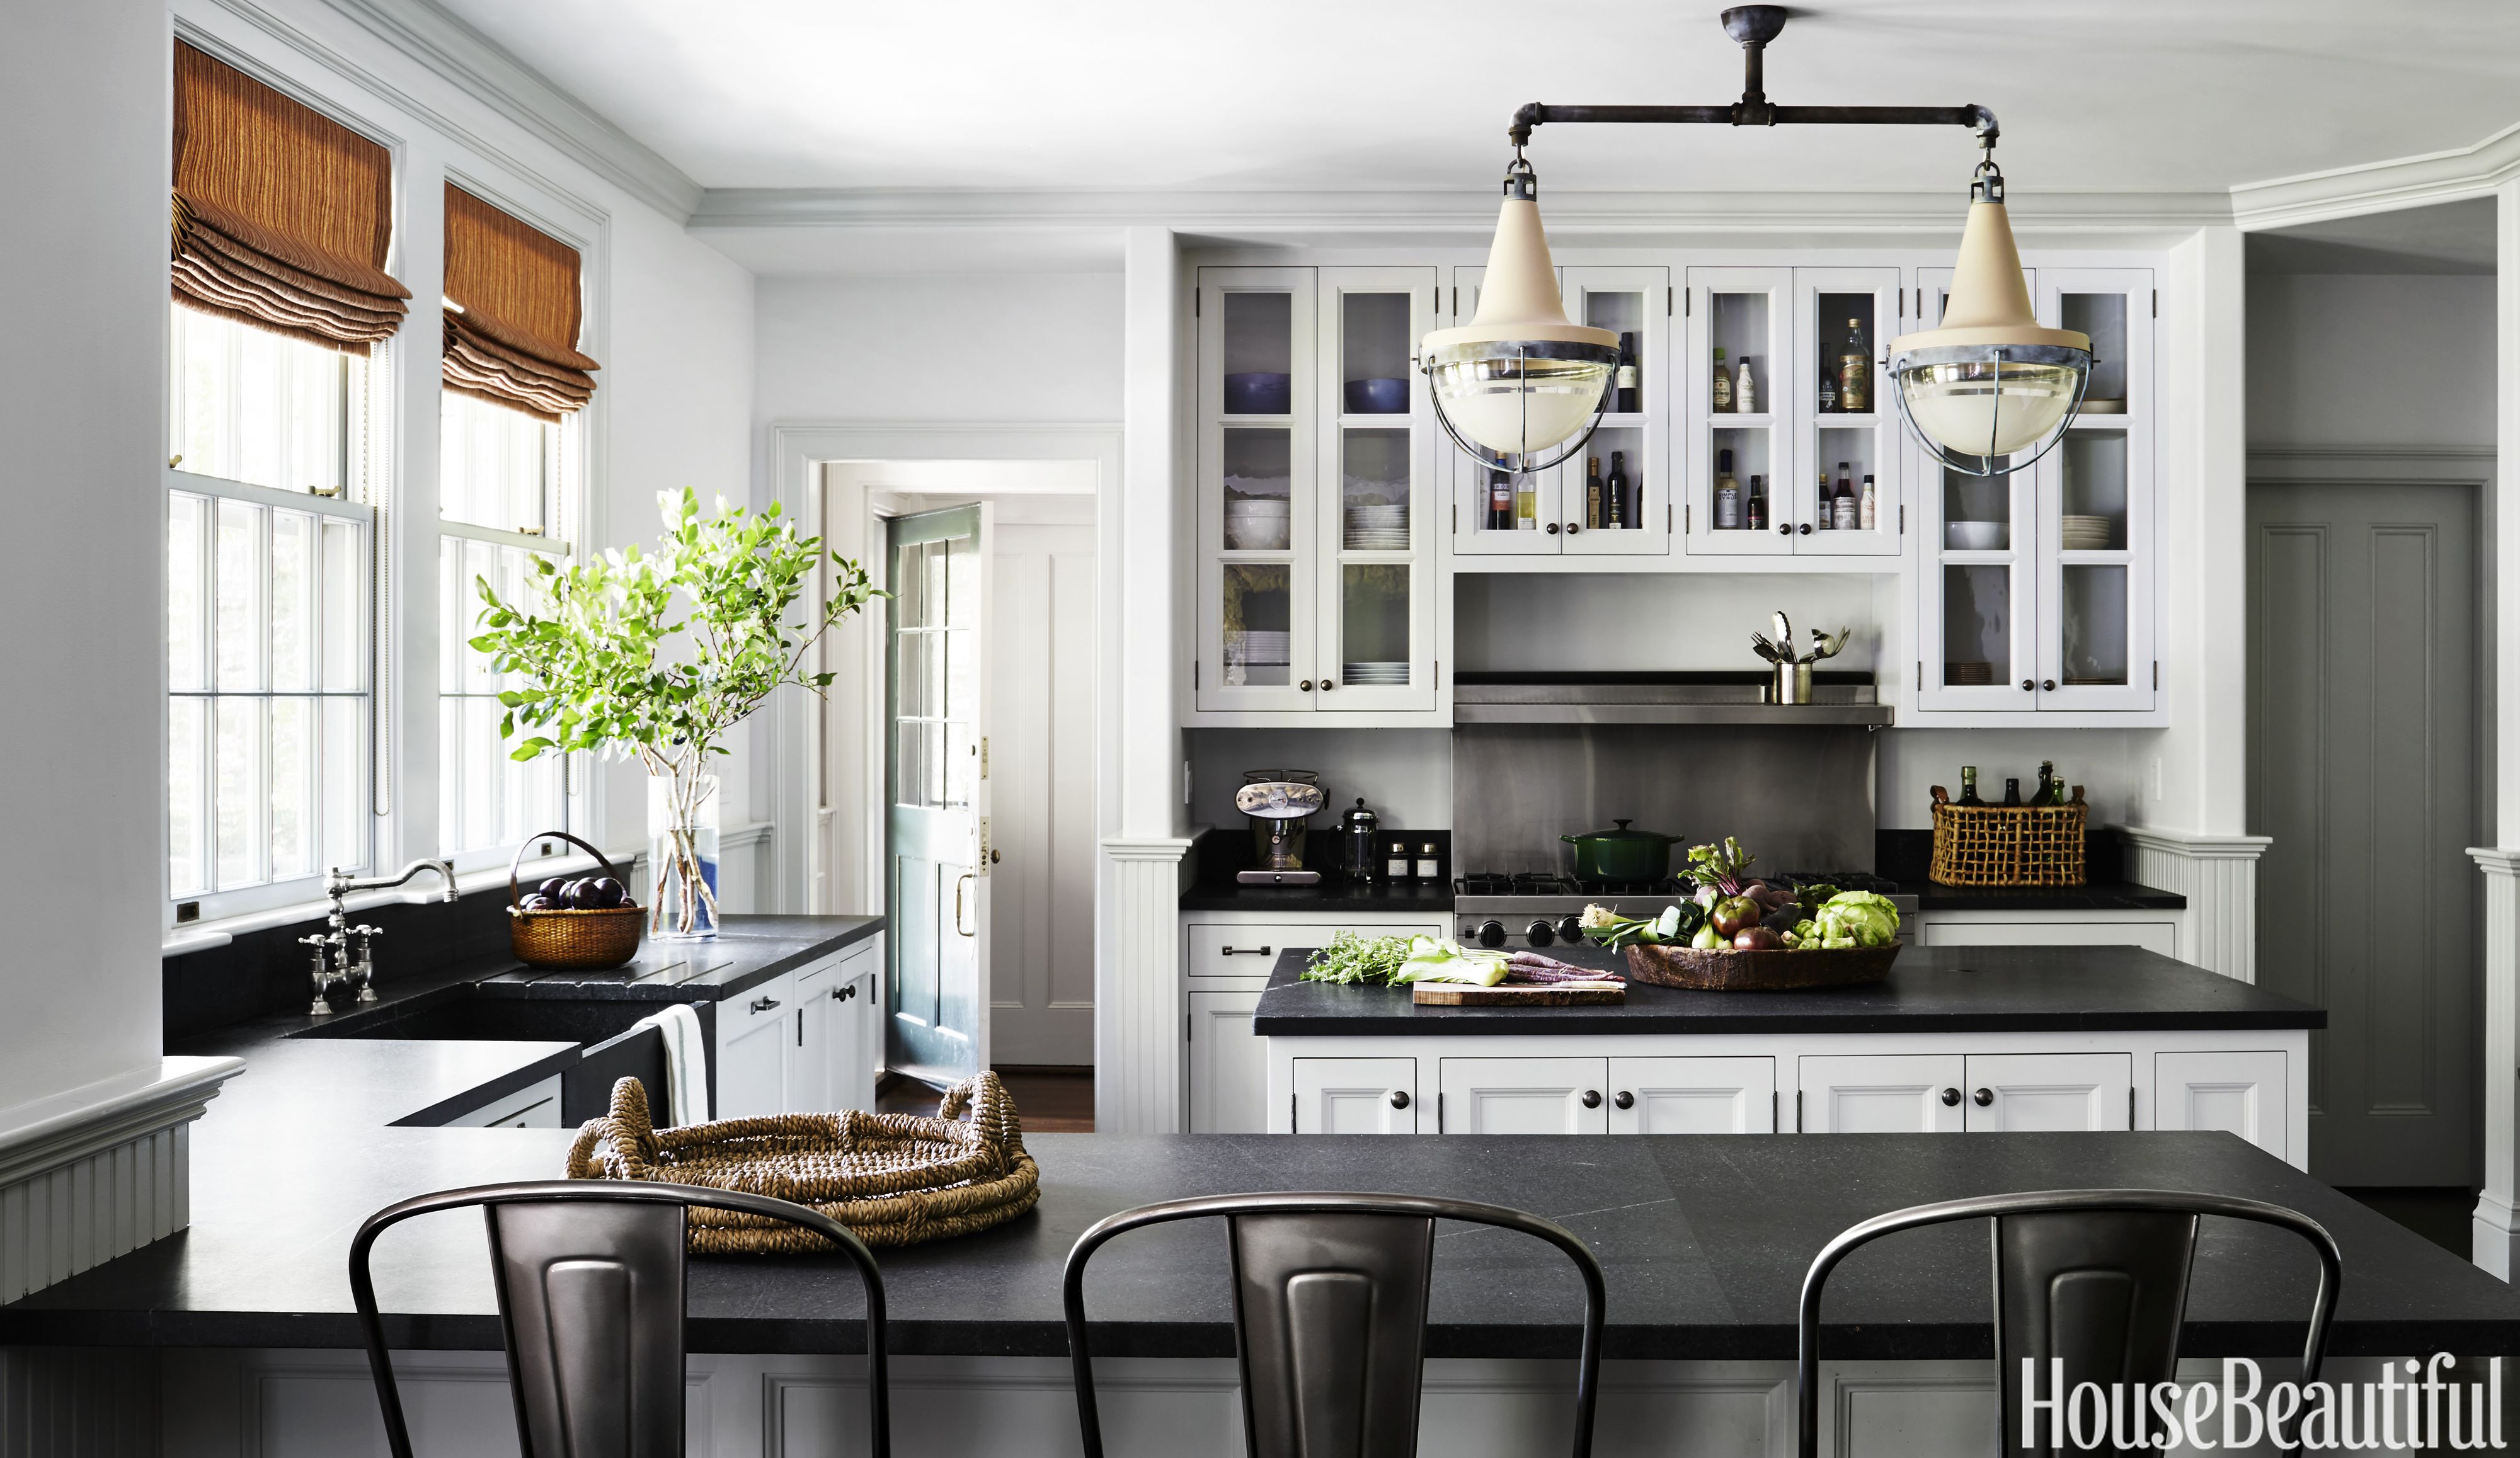 10 Grey Kitchen Ideas - Best Gray Kitchen Designs and Inspiration